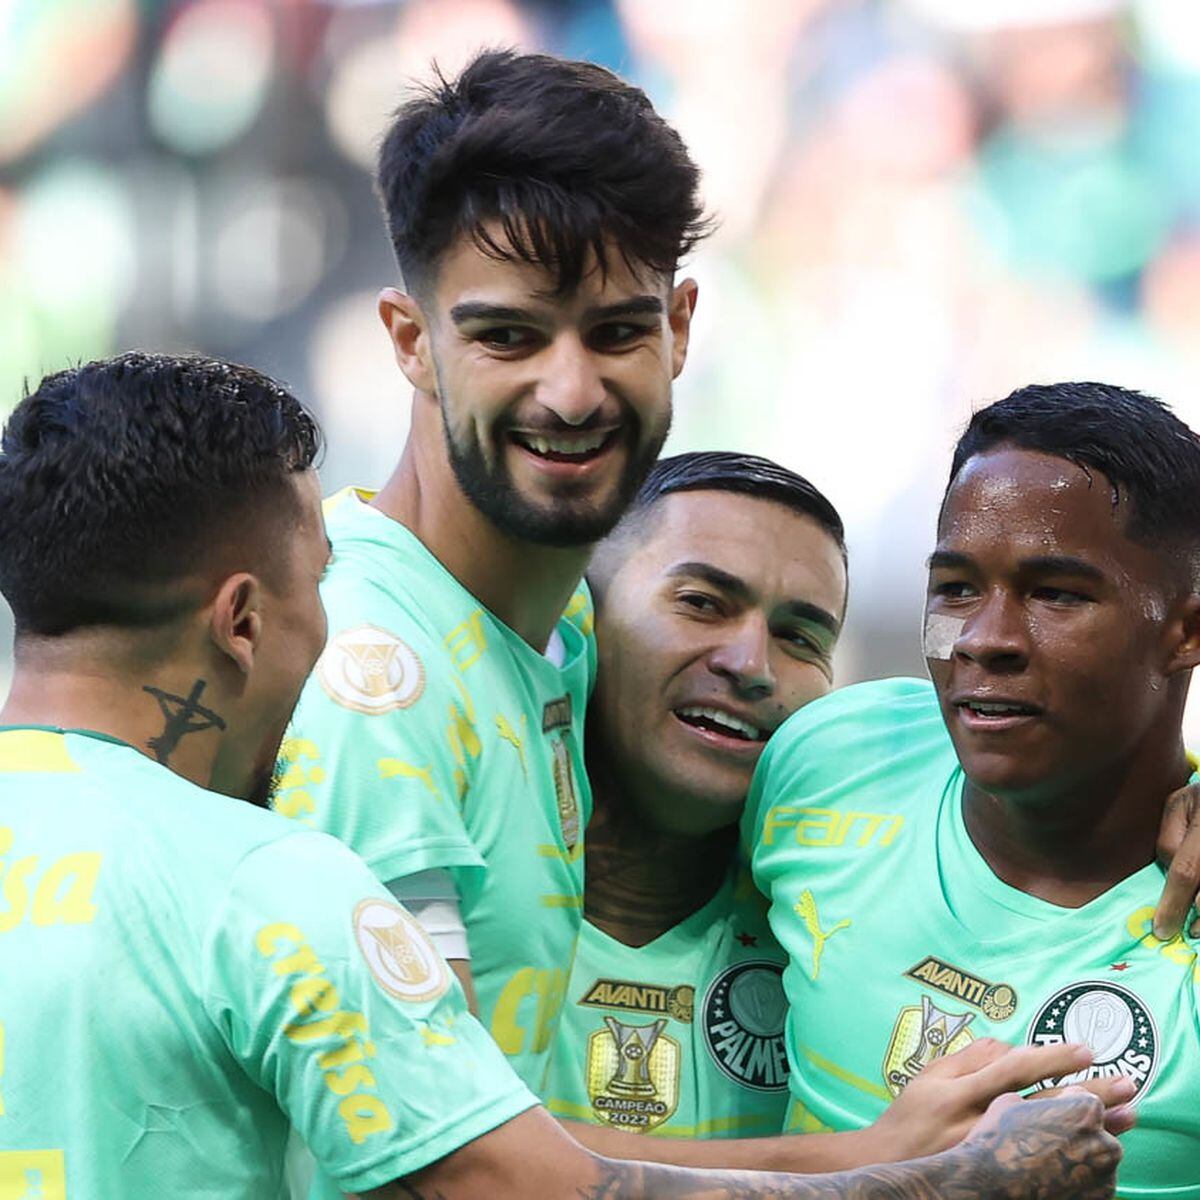 Léo joga hoje? Os suspensos e lesionados do Vasco para enfrentar o  Palmeiras pelo Brasileirão